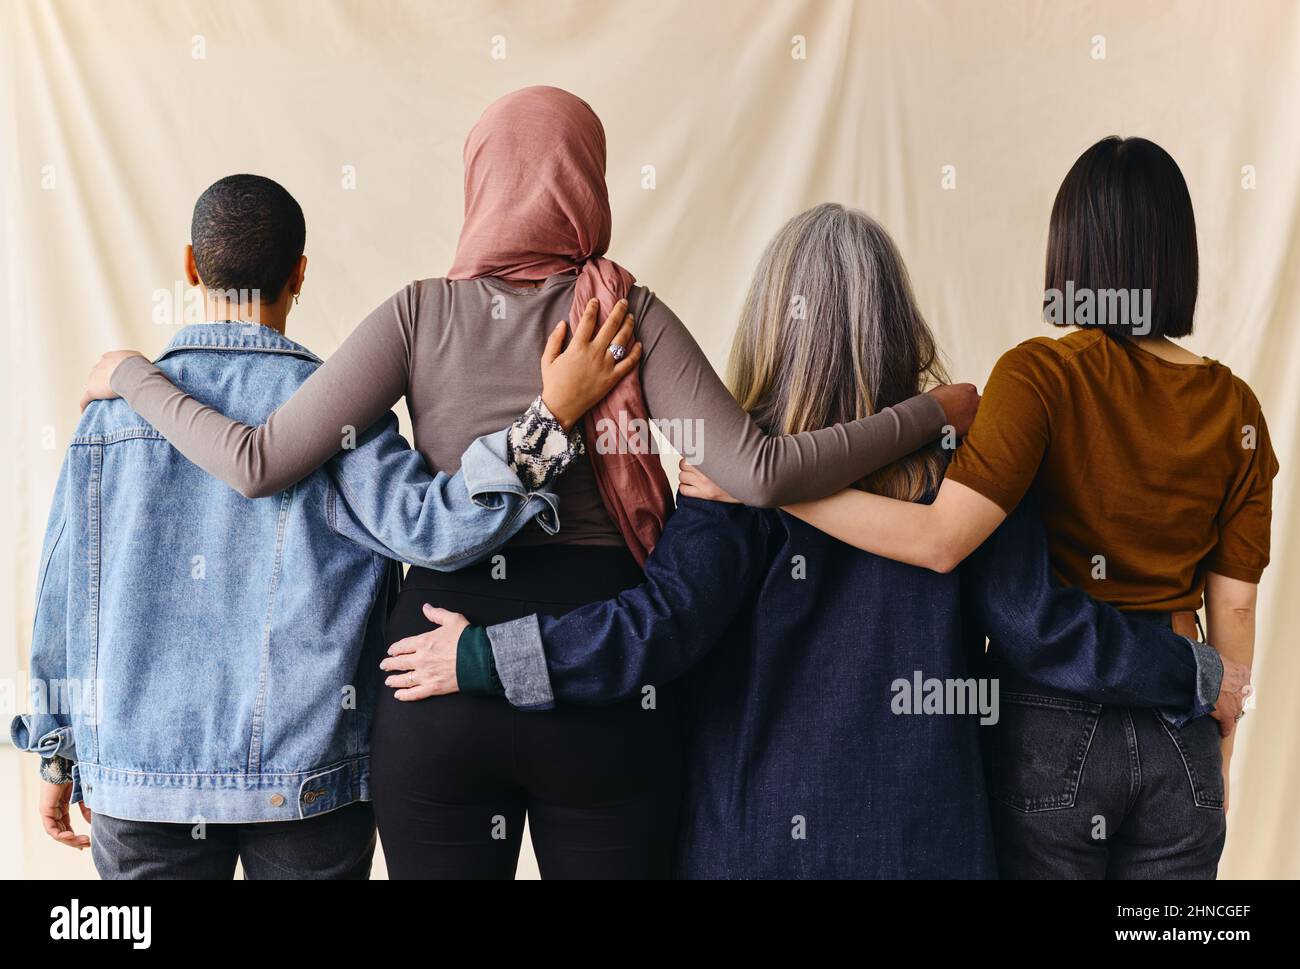 Rückansicht von vier Frauen mit umschrappten Armen zur Unterstützung des Internationalen Frauentags Stockfoto